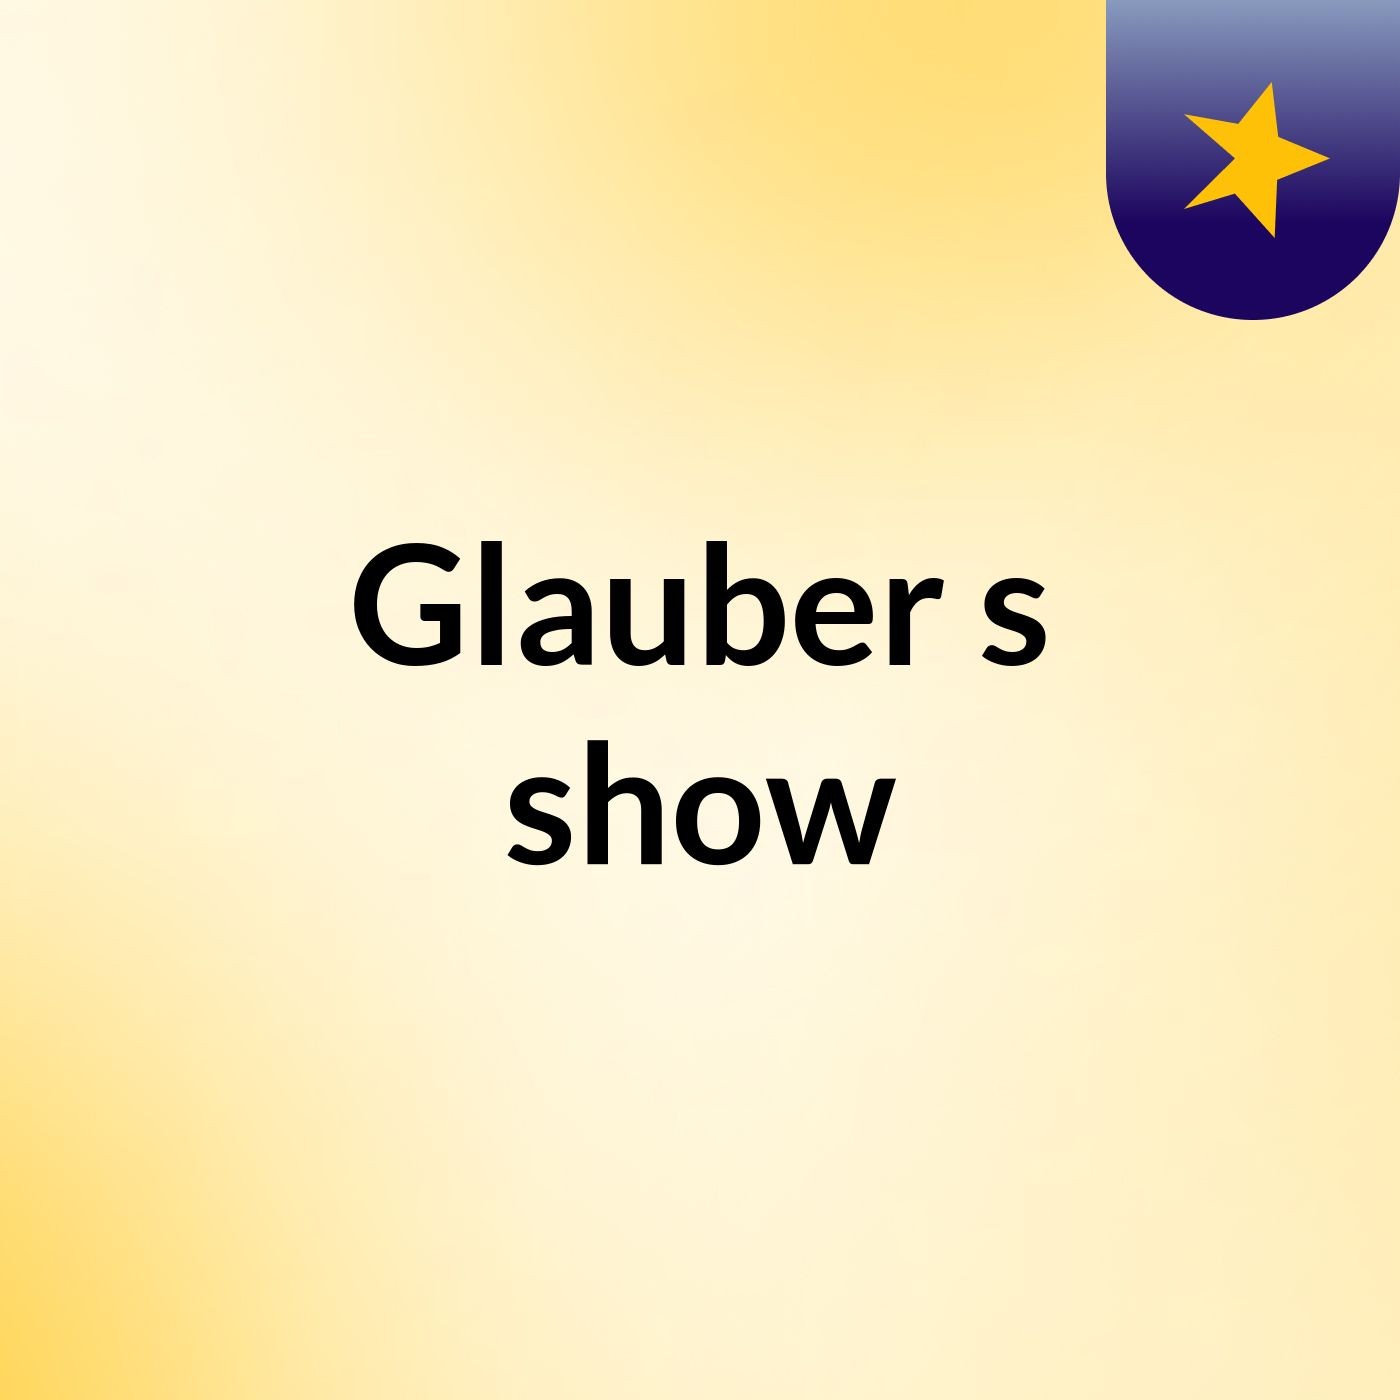 Glauber's show